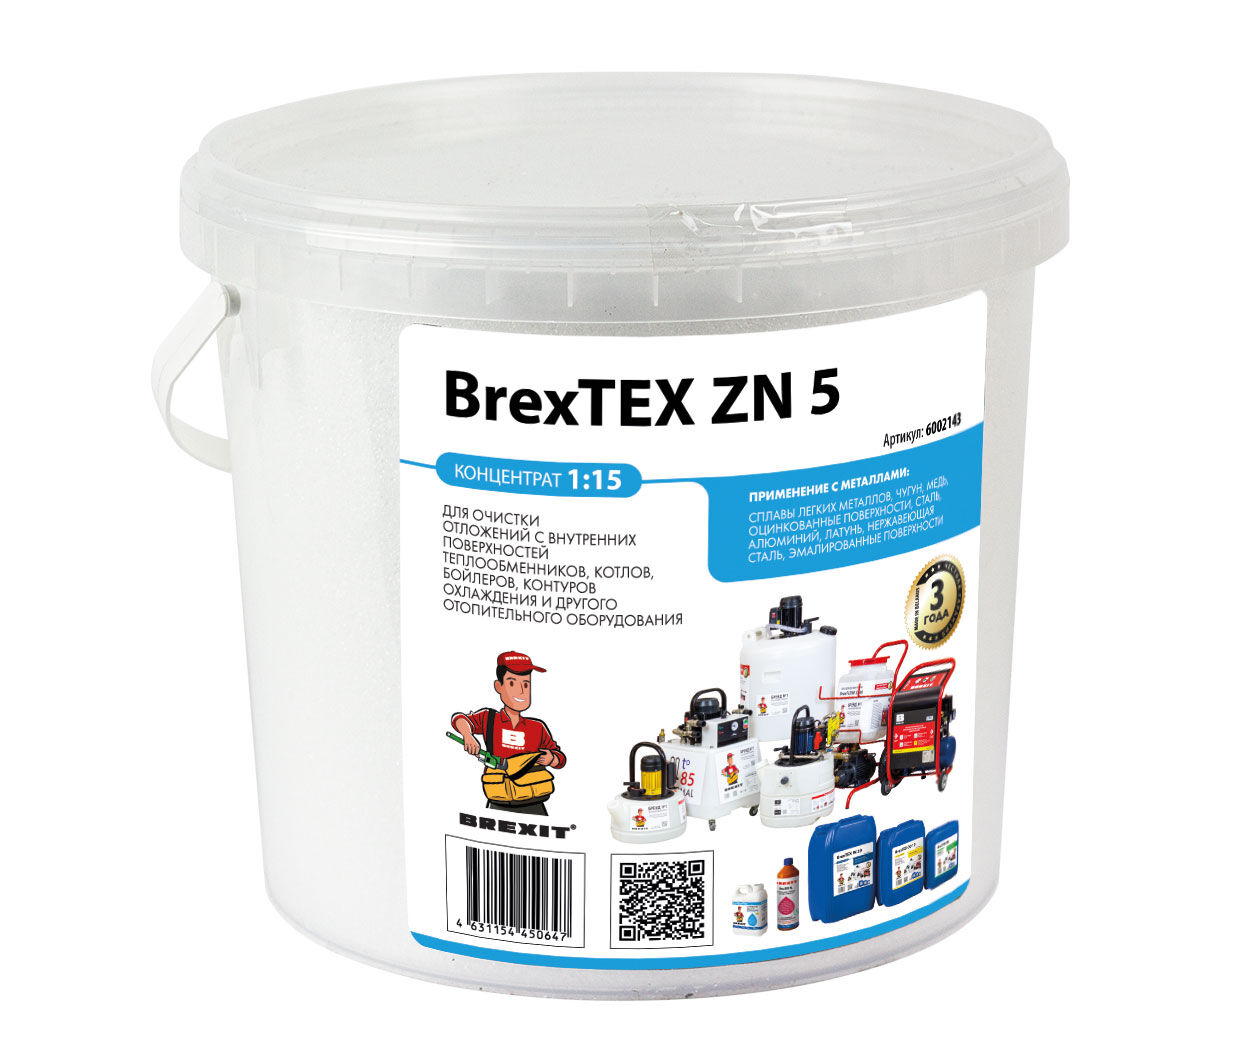 Порошковый реагент для промывки теплообменников BrexTEX ZN 5 brexit